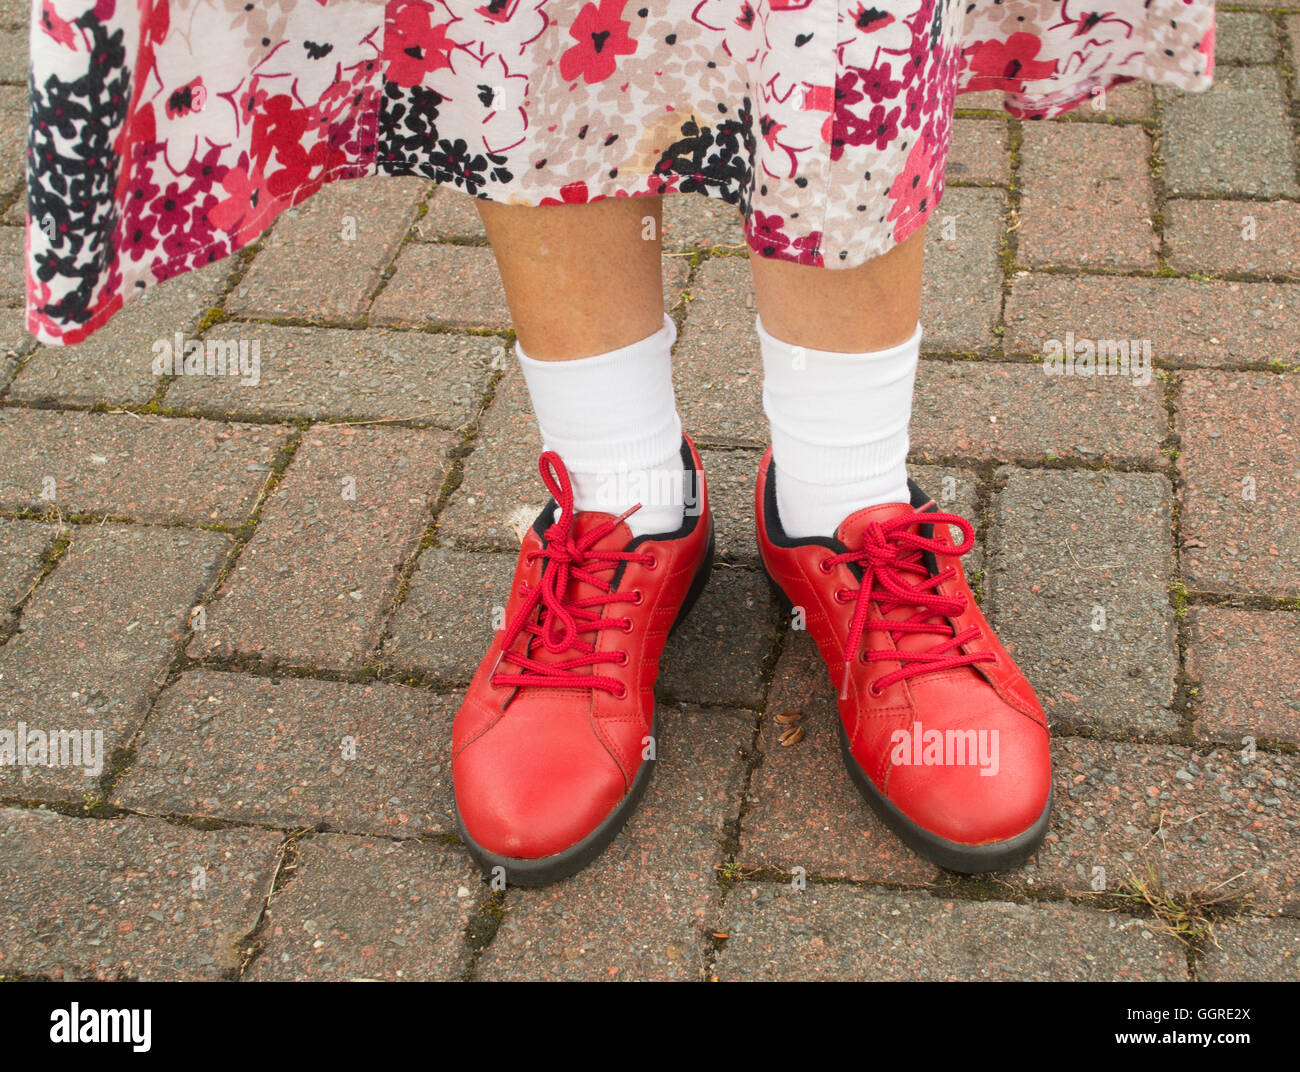 Frau trägt rote Schuhe und weiße Söckchen Stockfotografie - Alamy